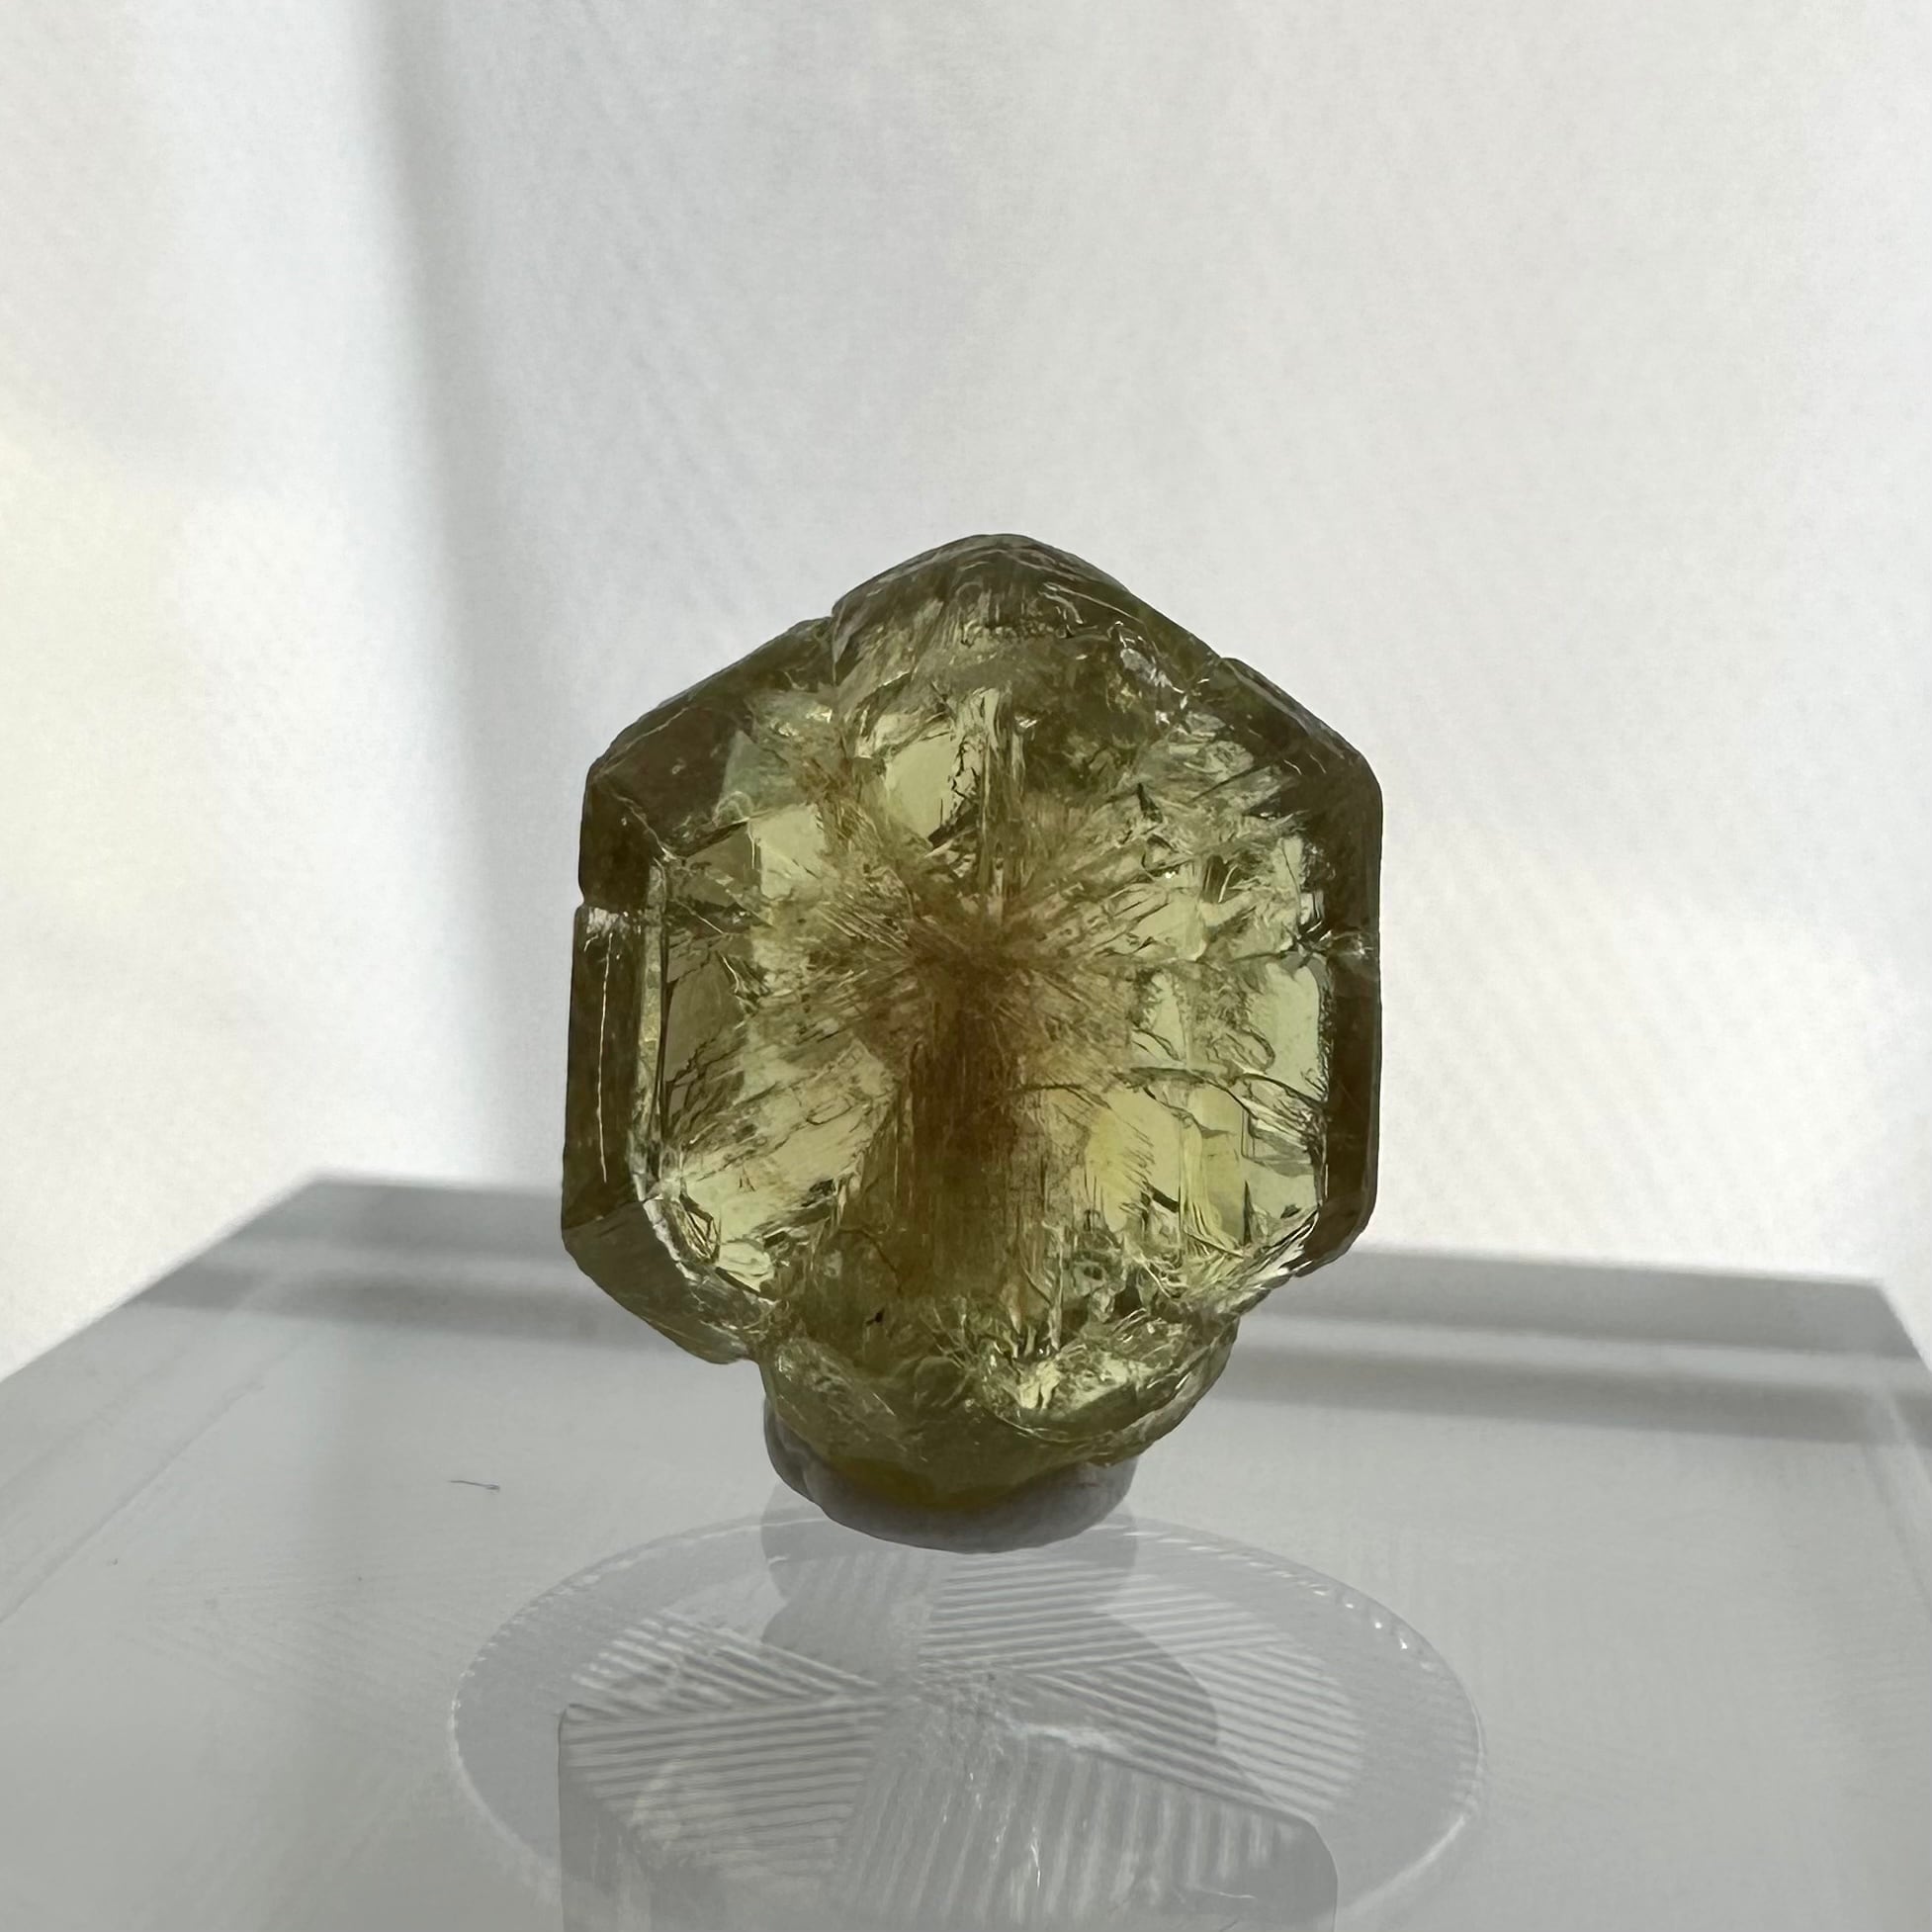 166 アレキサンドライト 原石 結晶 ジンバブエ産 - アンティーク